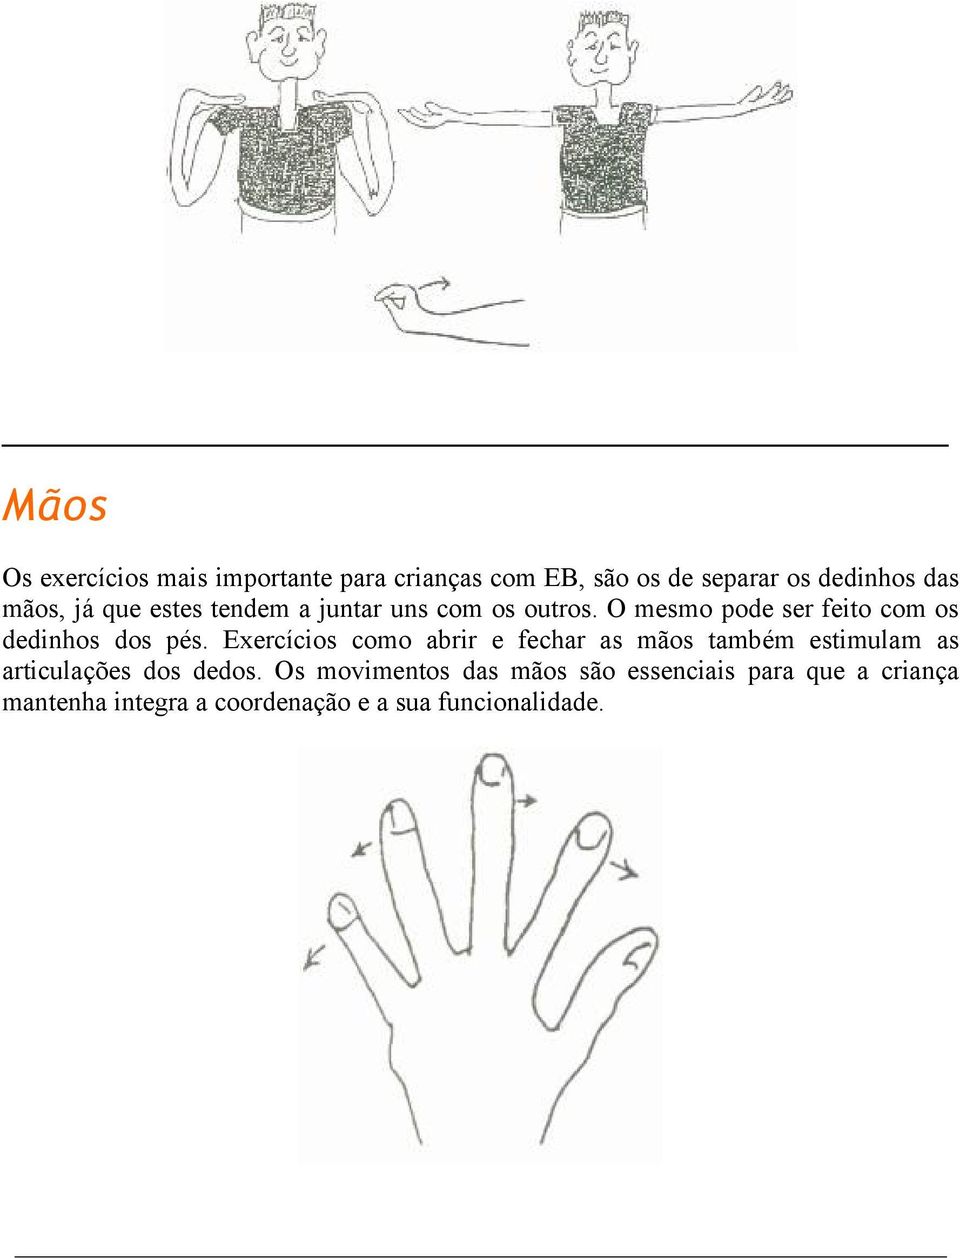 Exercícios como abrir e fechar as mãos também estimulam as articulações dos dedos.